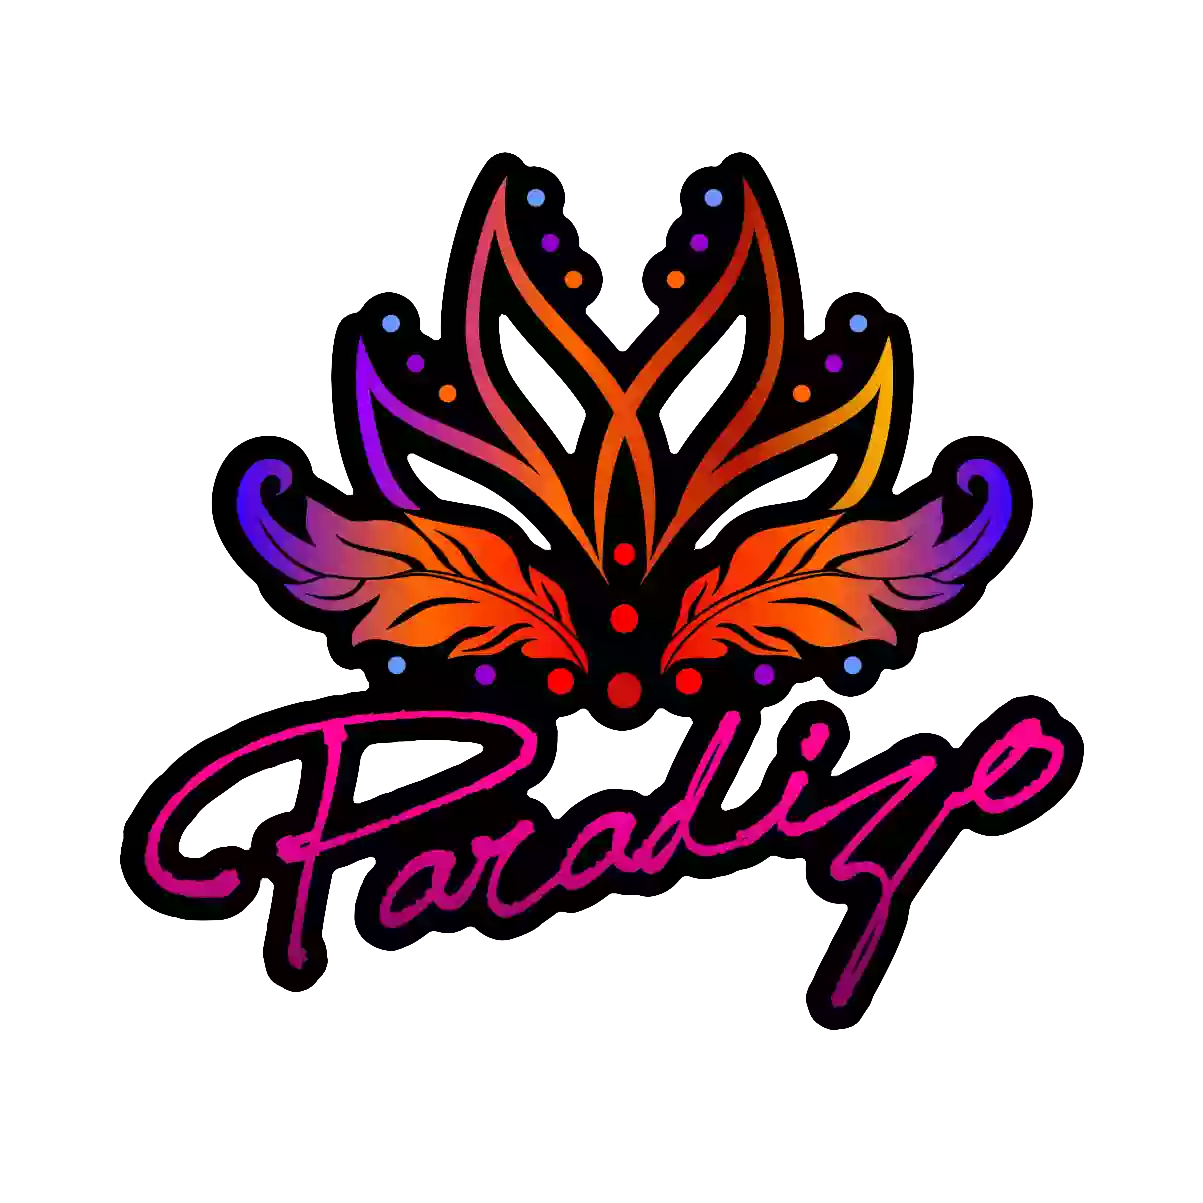 Paradizo School of Latin Dance